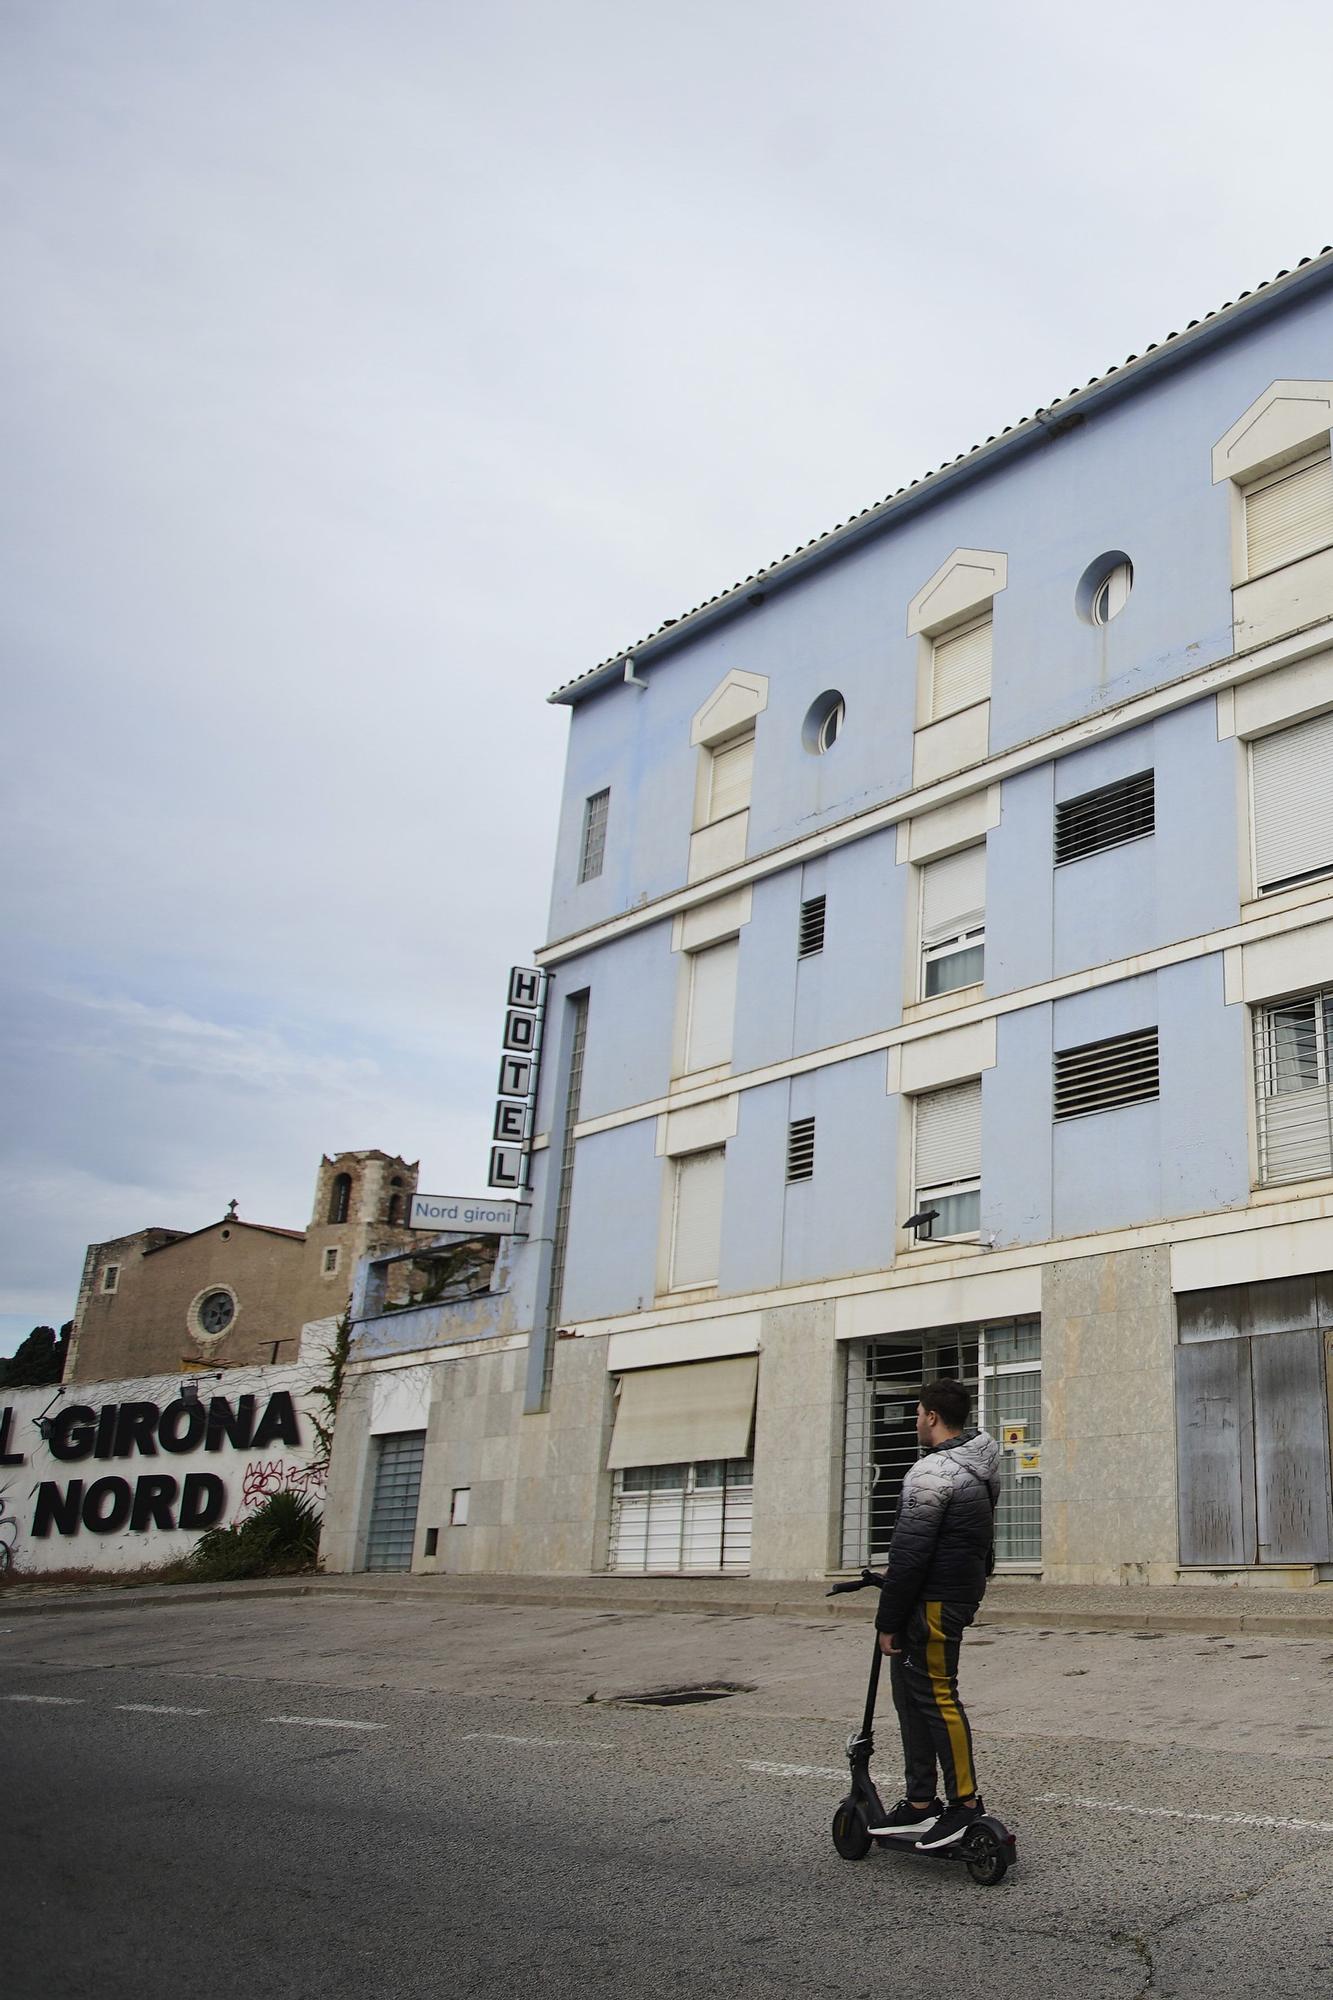 L’Hotel Nord Gironí reobrirà el 2023, amb nou propietari, després de deu anys tancat